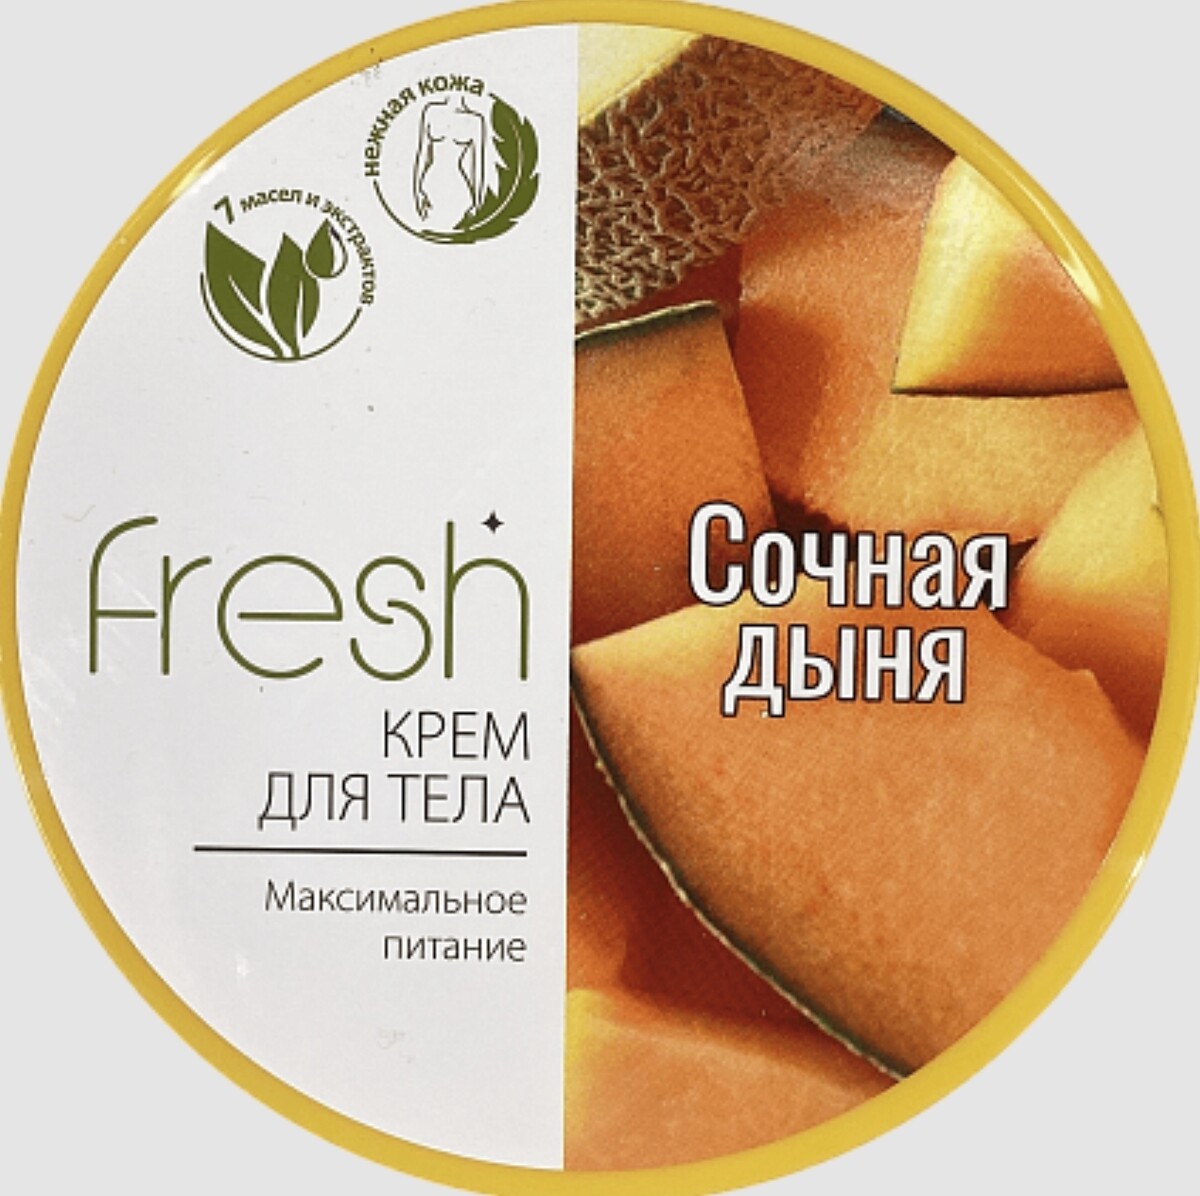 Fresh крем для тела максимальное питание сочная дыня 250г fresh крем для тела максимальное питание сочная дыня 250г